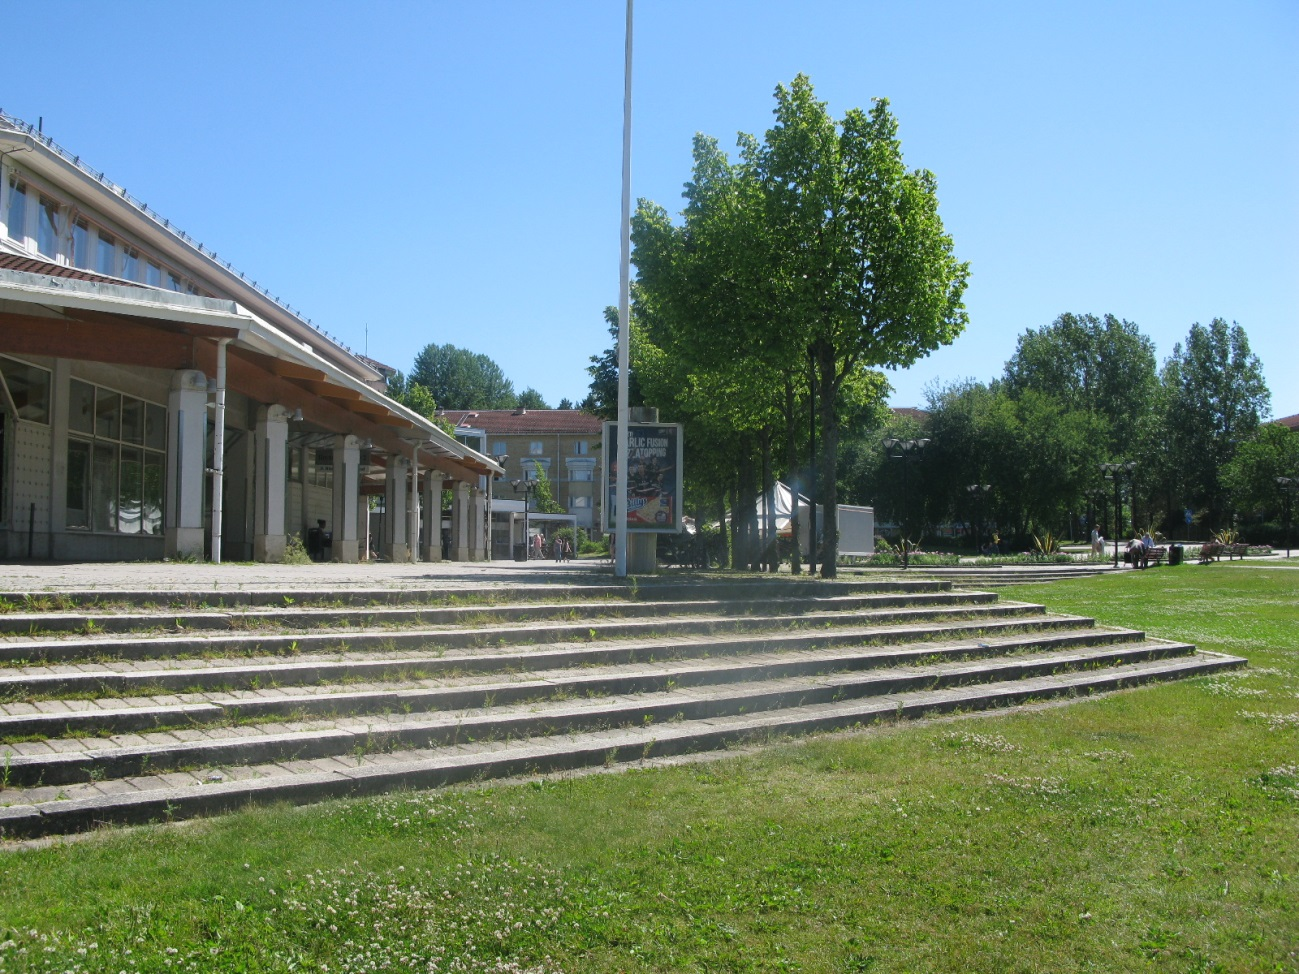 I Rissne finns flera lekplatser och områden som agerar målpunkter (se Figur 3) för lek och utomhusvistelse, bland annat parkytor och grönområden.